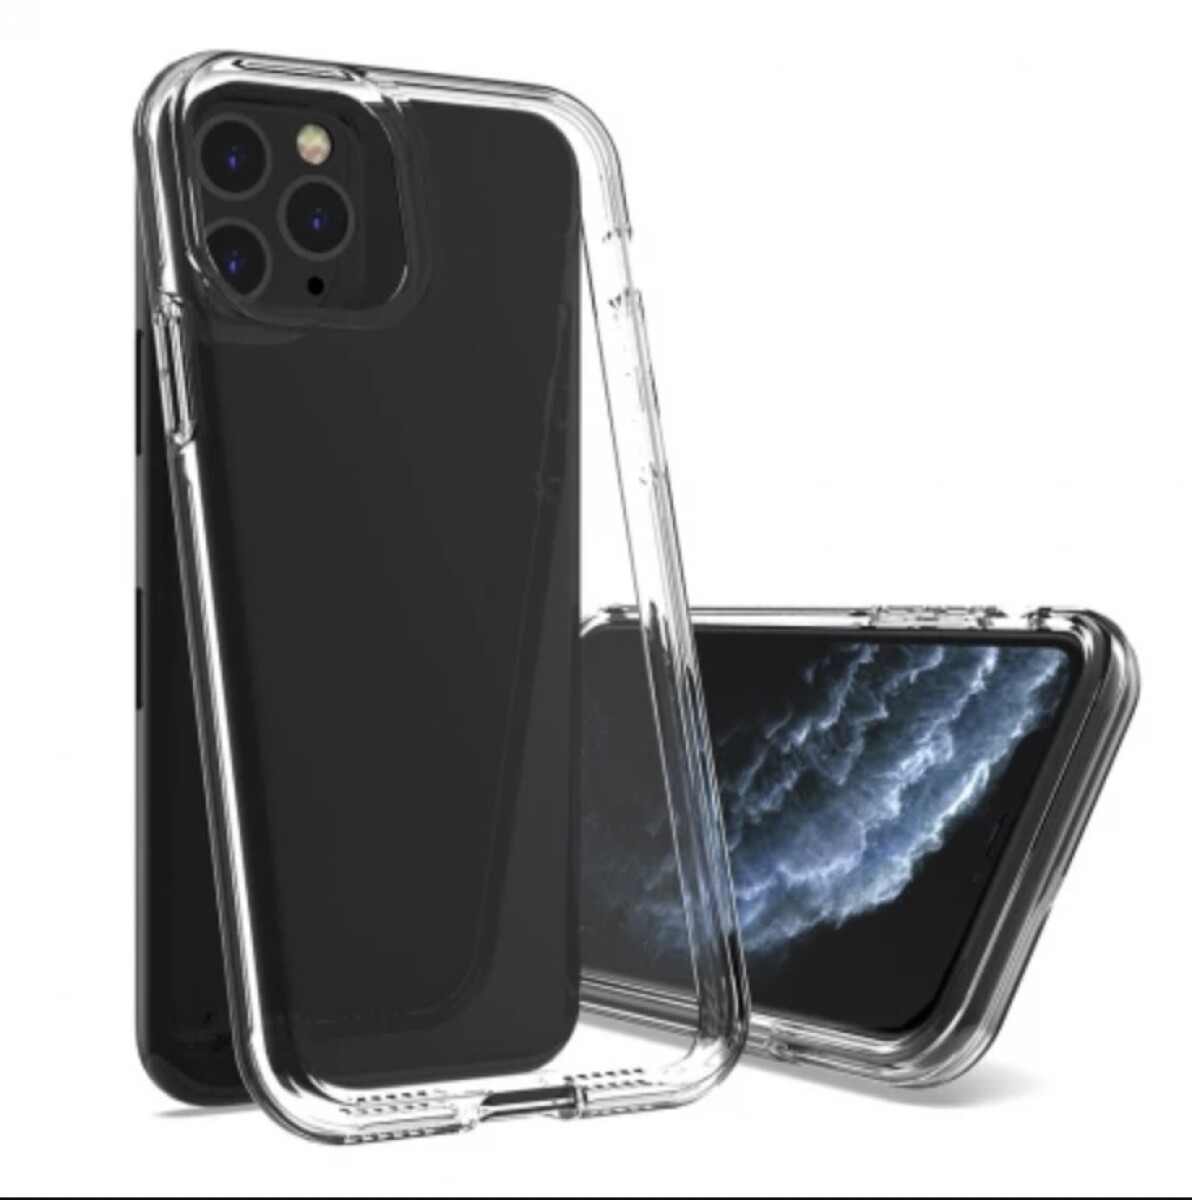 Armor transparente iphone 12 pro max - Transparente 